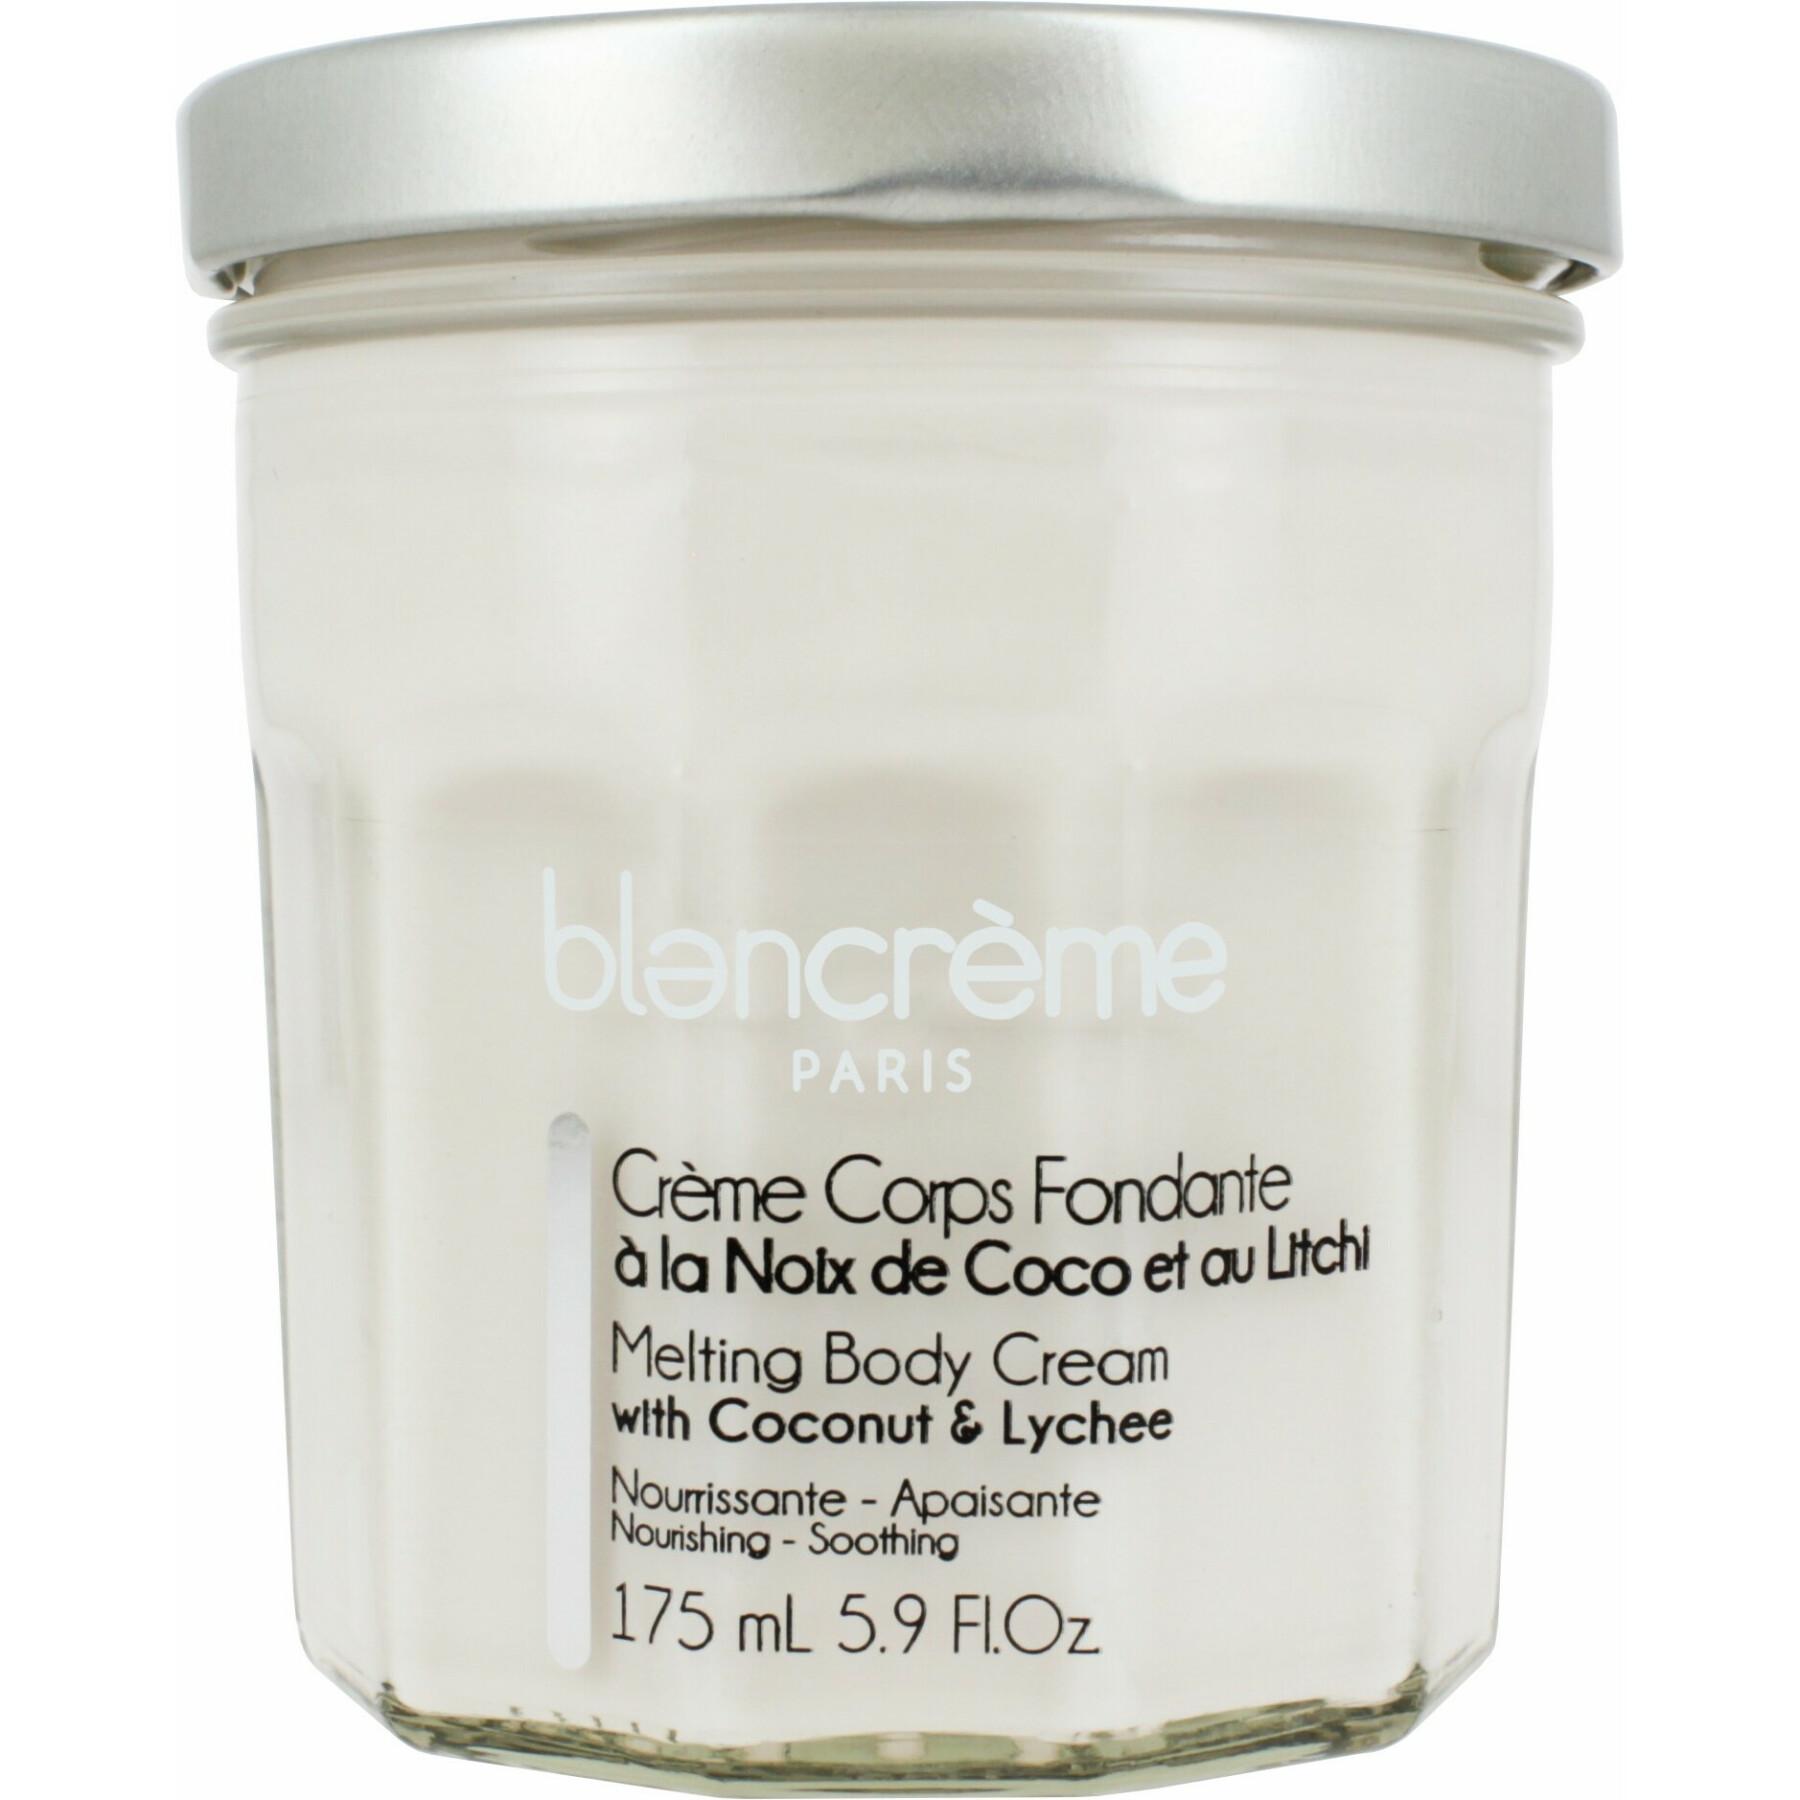 Bodycrème - kokosnoot & lychee - Blancreme 175 ml